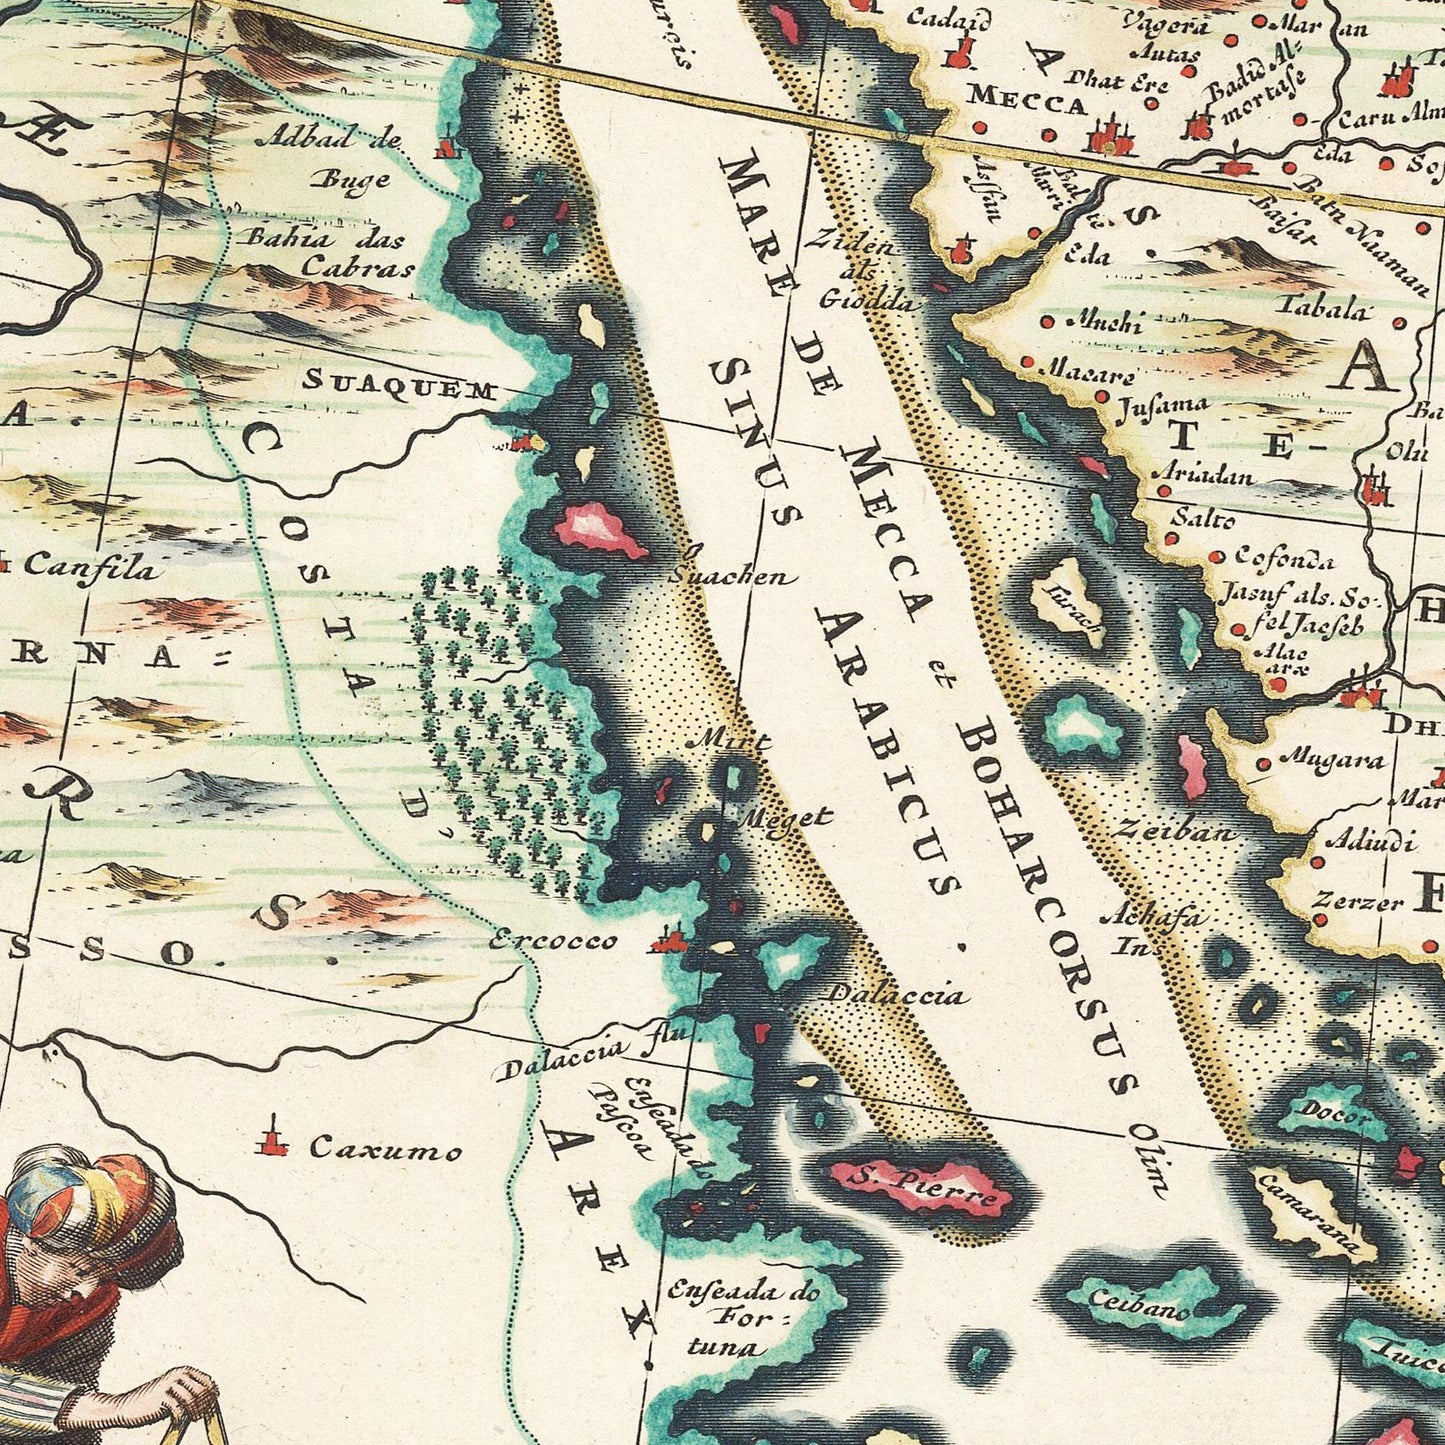 Historische Landkarte Arabien & Persien um 1680